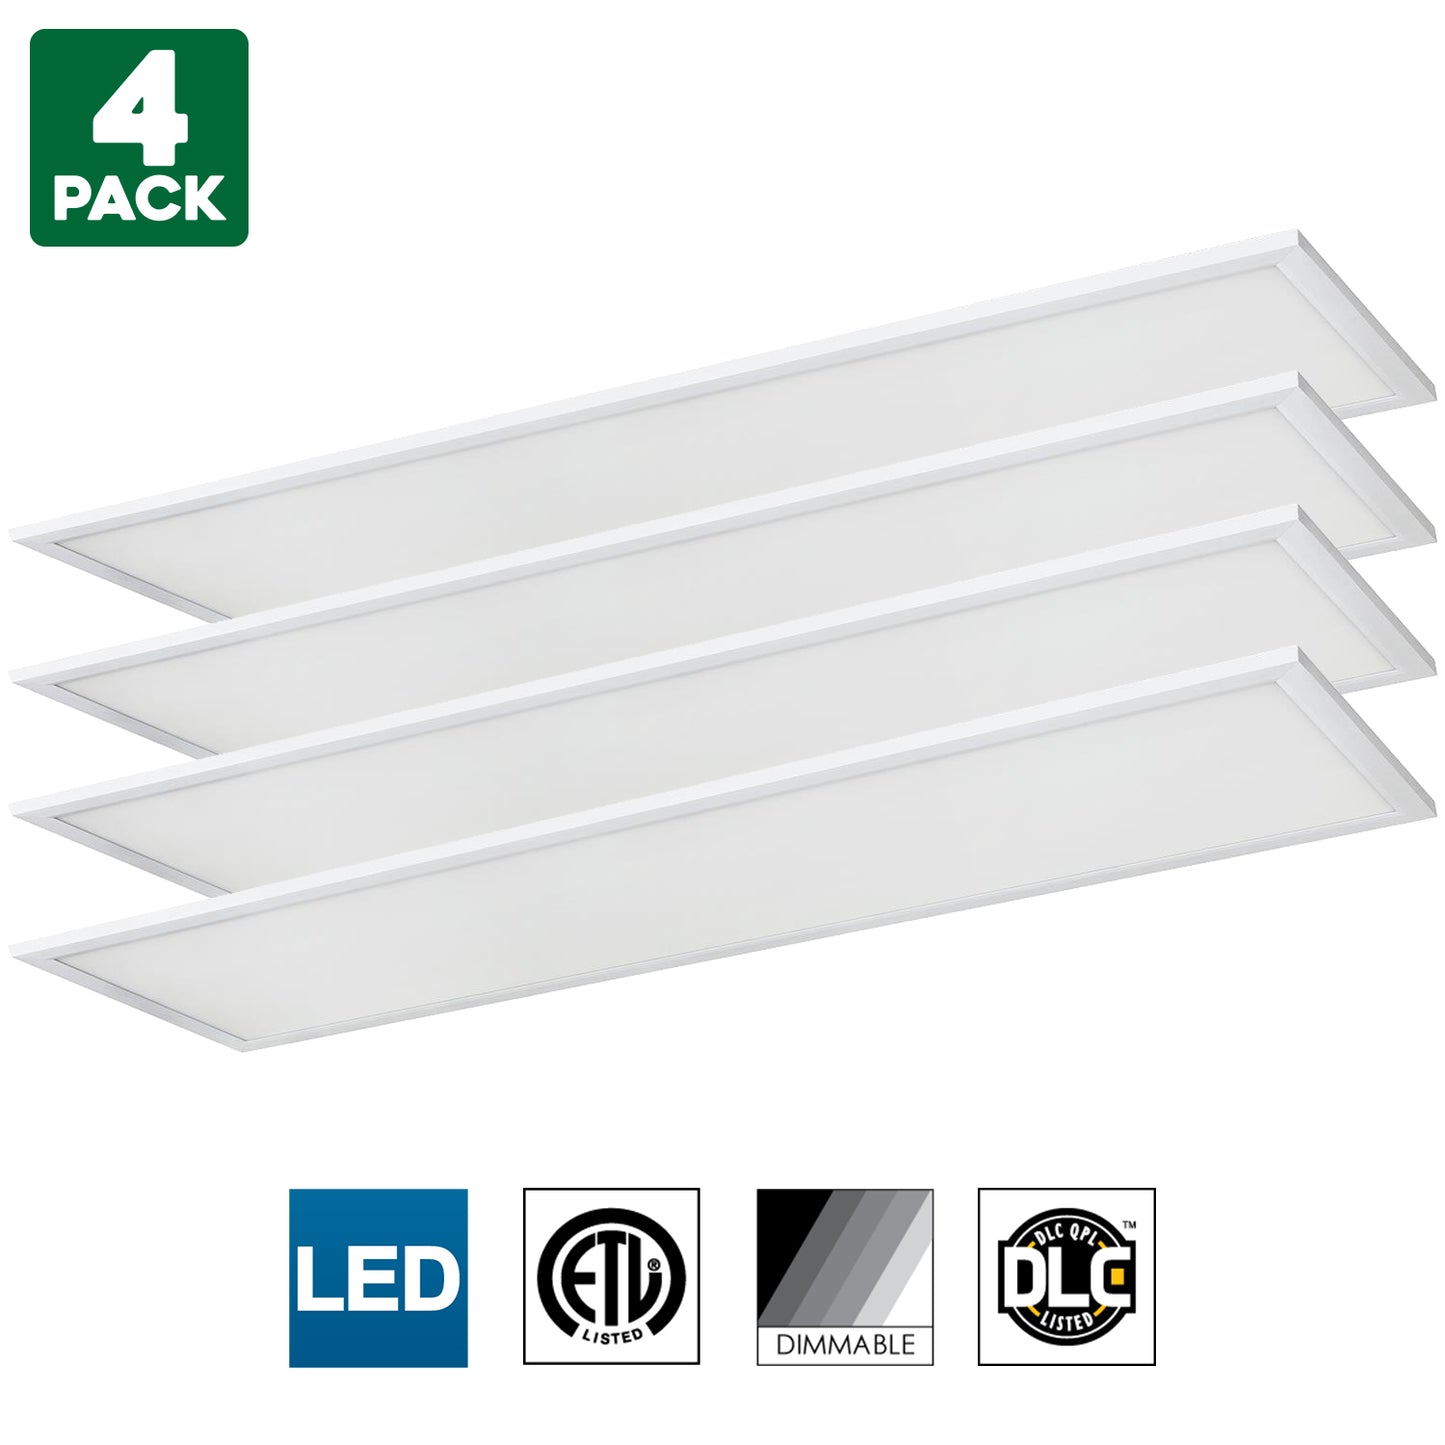 Sunlite LED Light Panel, 1x4 Foot, 40 Watt, 3500K Warm White, 3500 Lumens, Dimmable, DLC listed, 50000 Hours Average Life Span, 2-Pack